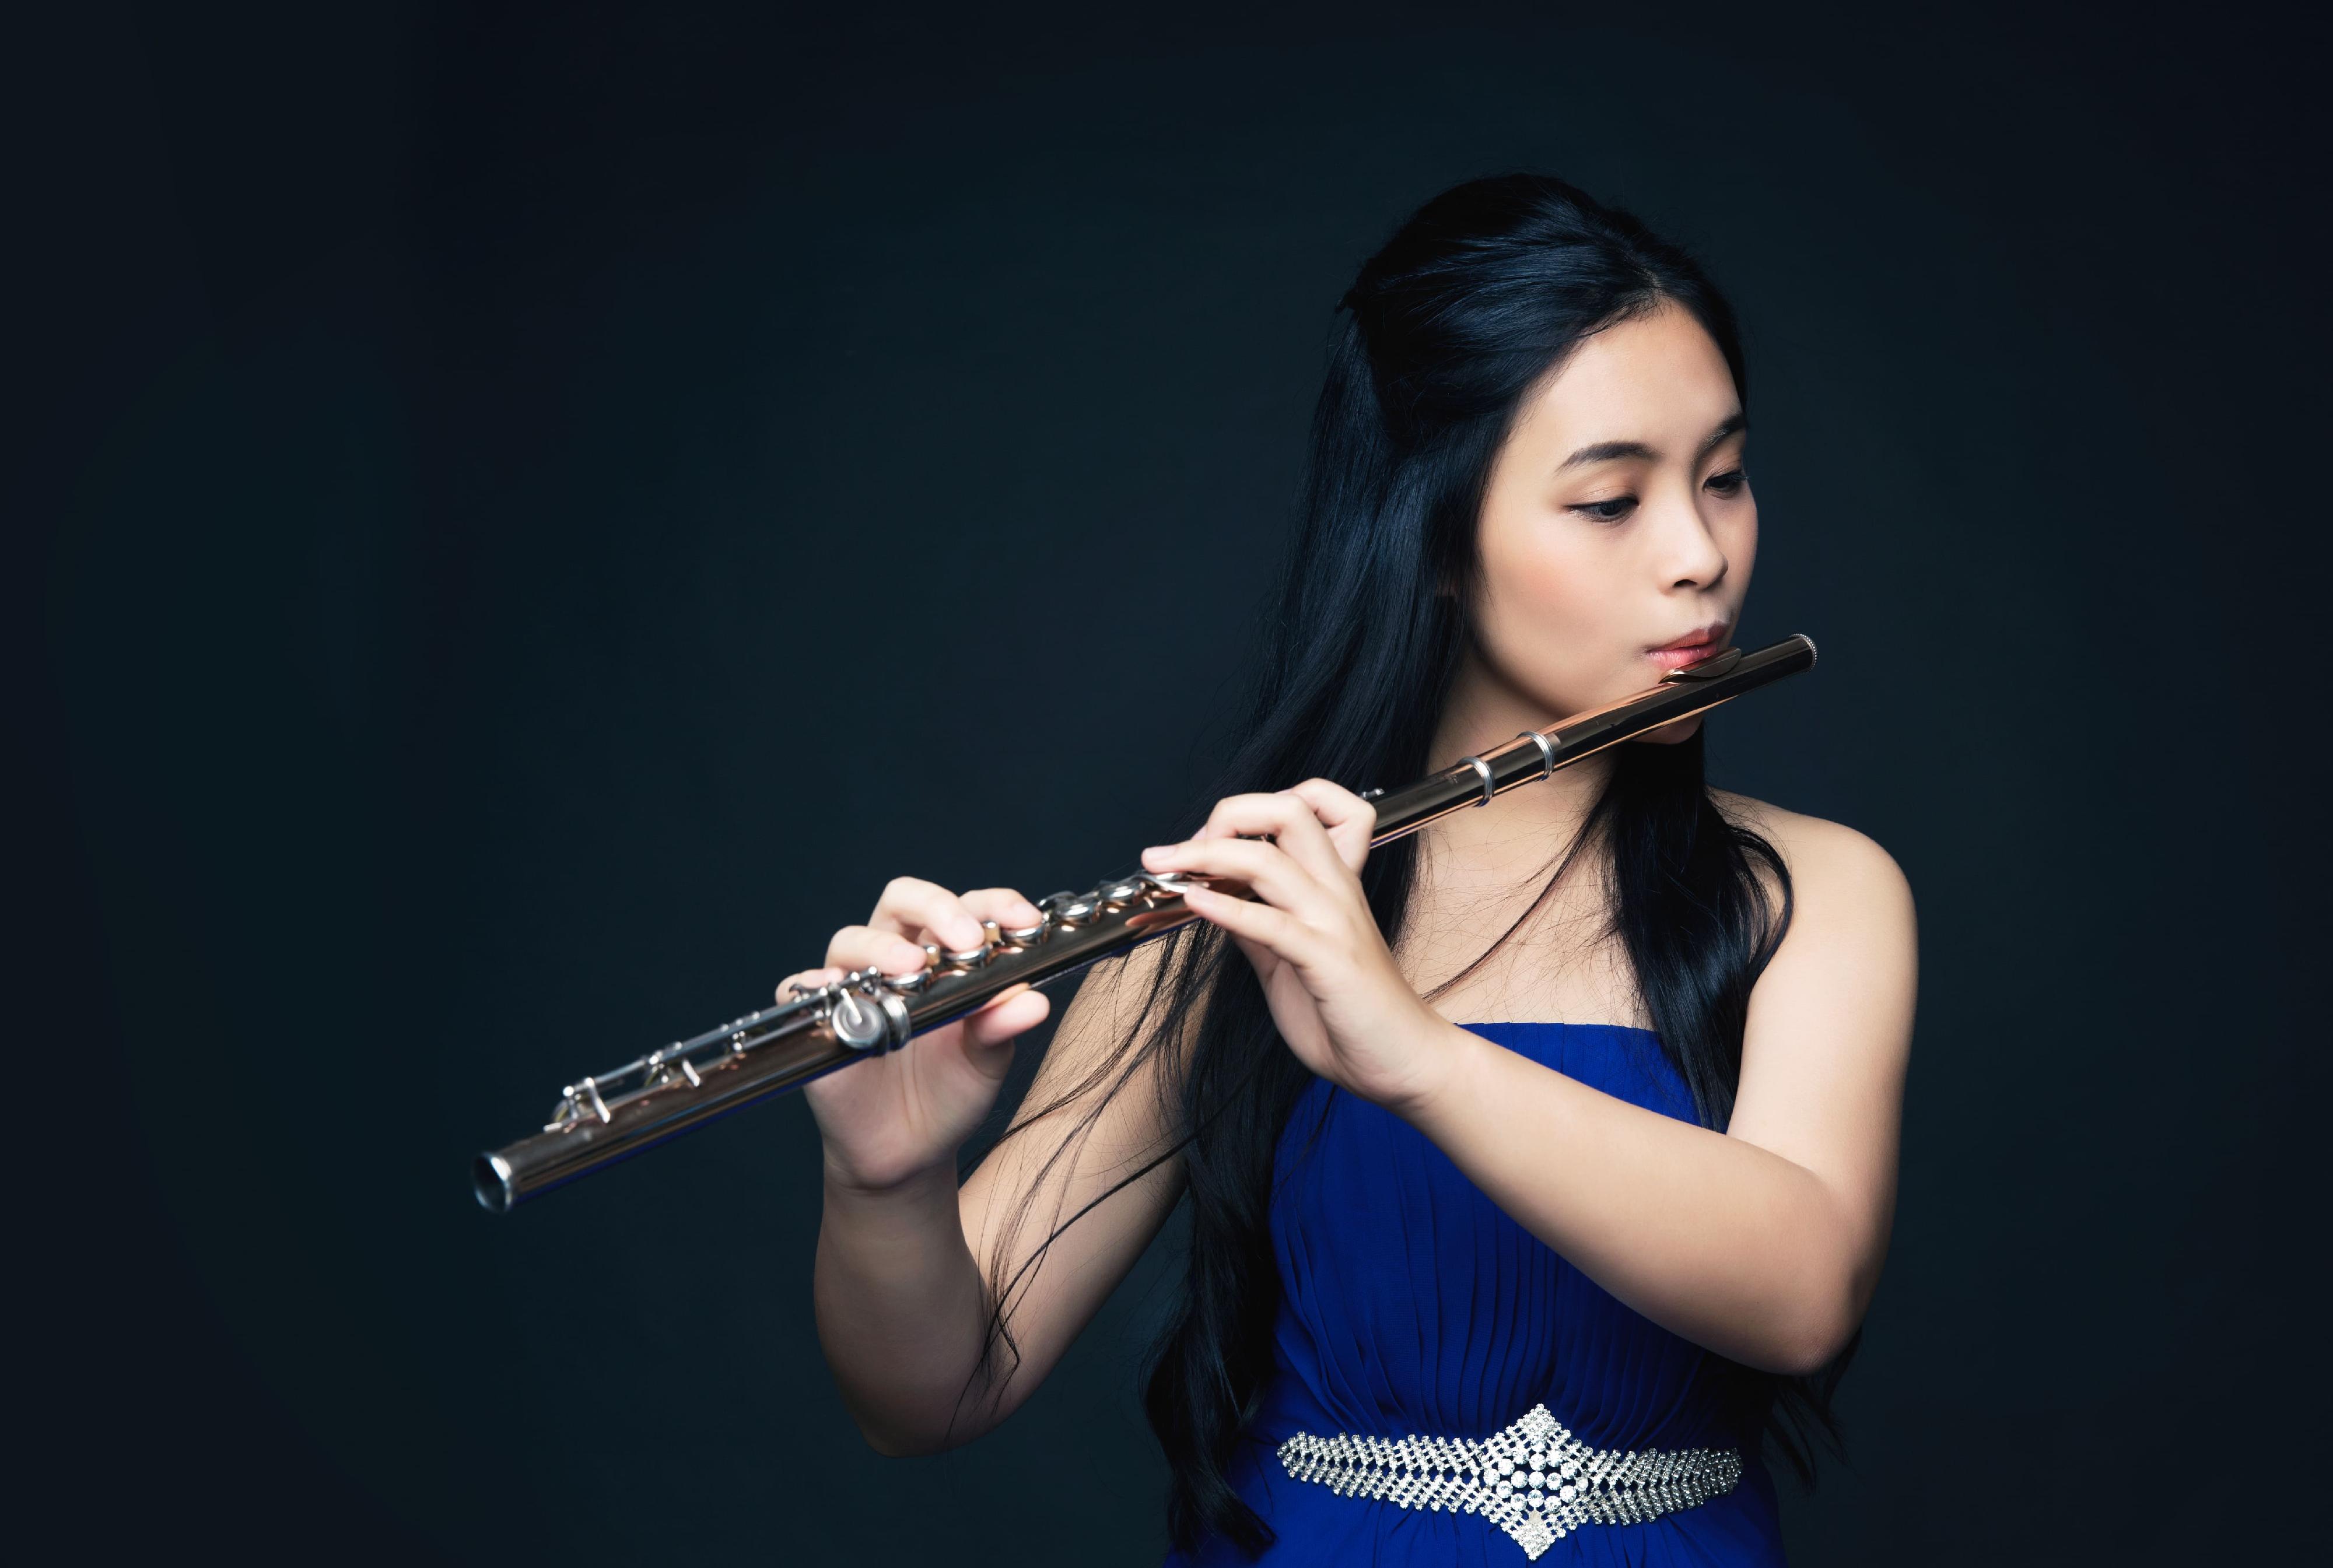 康乐及文化事务署「香港艺术家」系列五月举办许嘉晴与廖冬保长笛及巴松管演奏会。图示长笛演奏家许嘉晴。